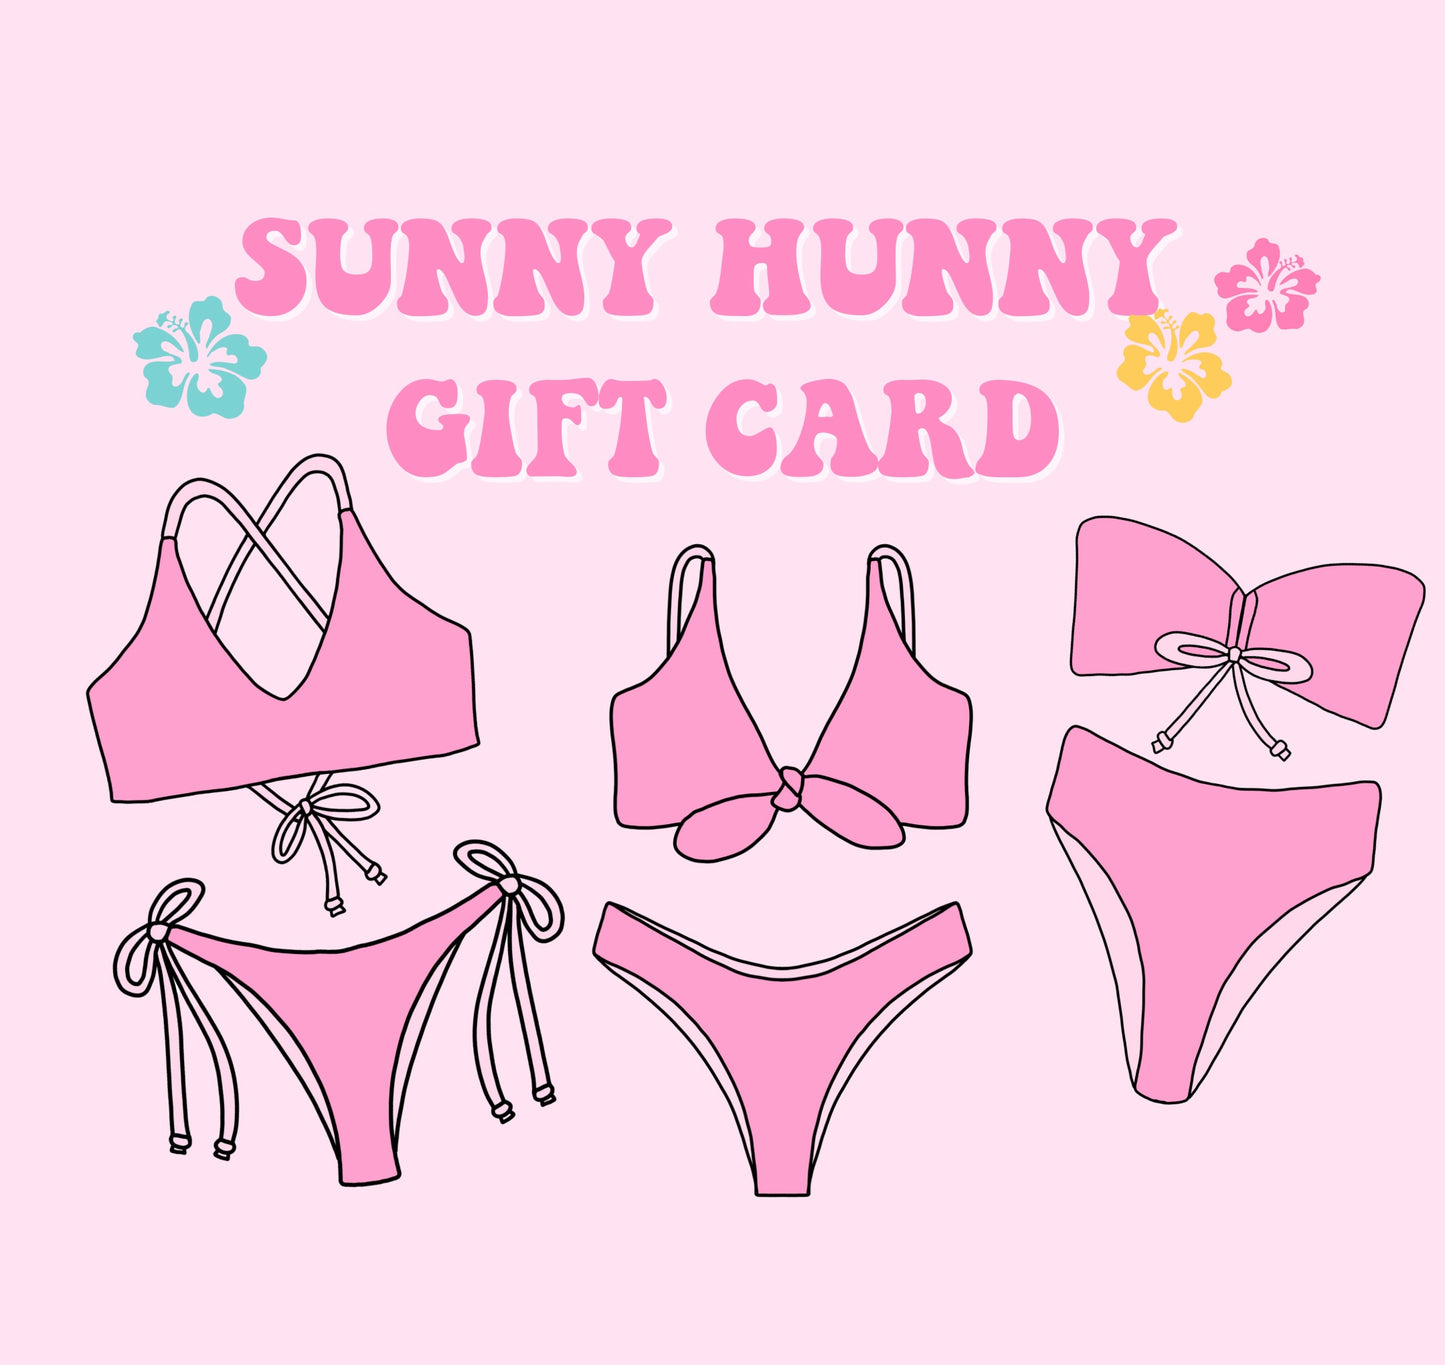 Sunny Hunny gift card